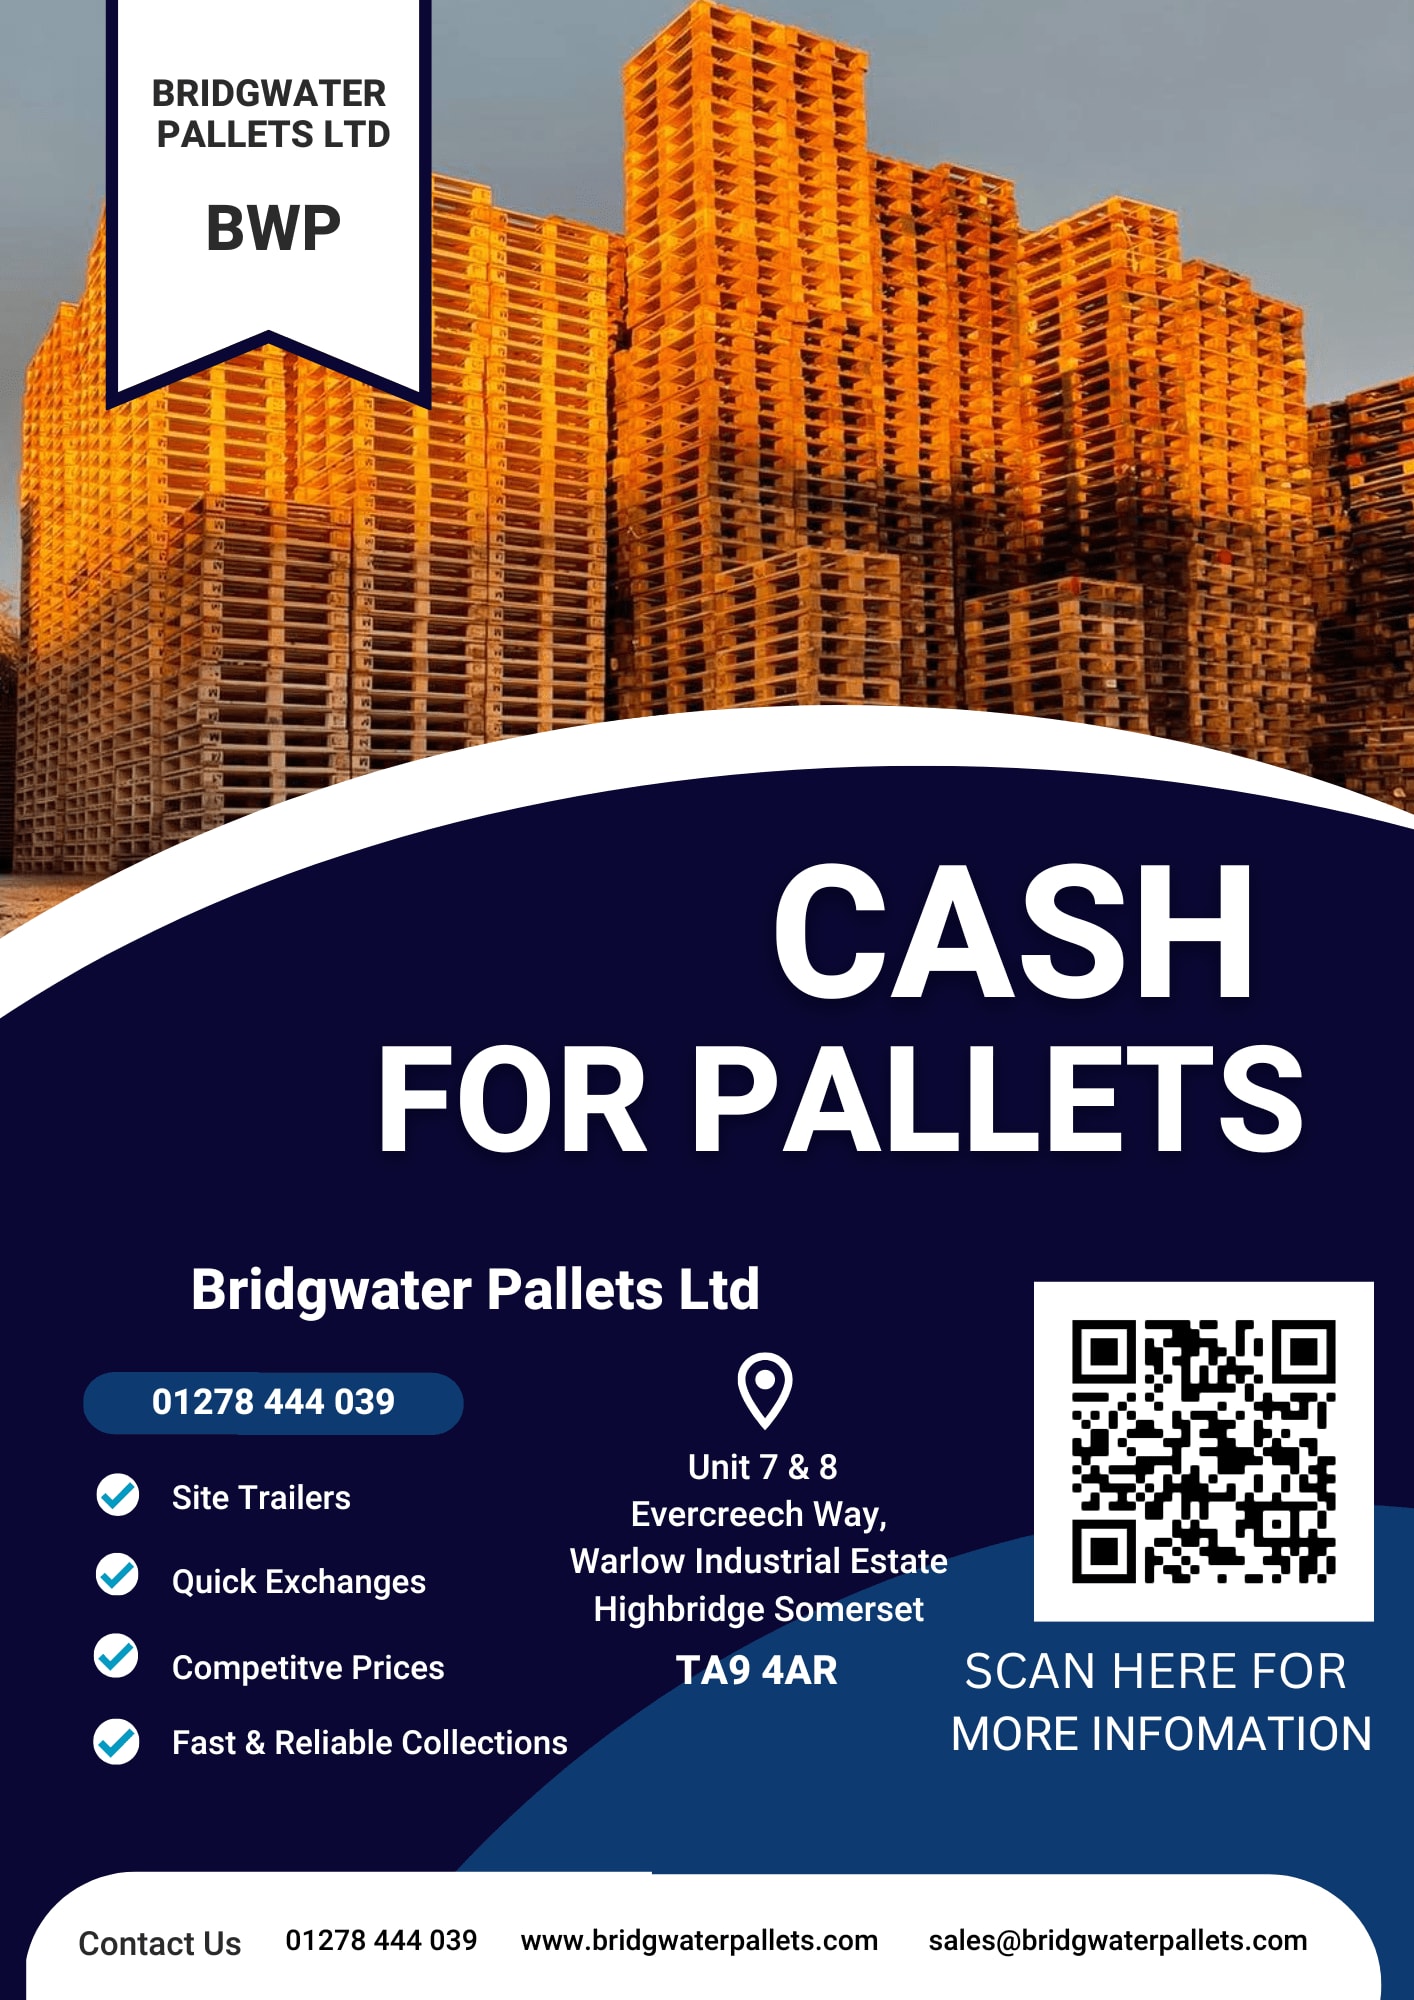 Images Bridgwater Pallets Ltd